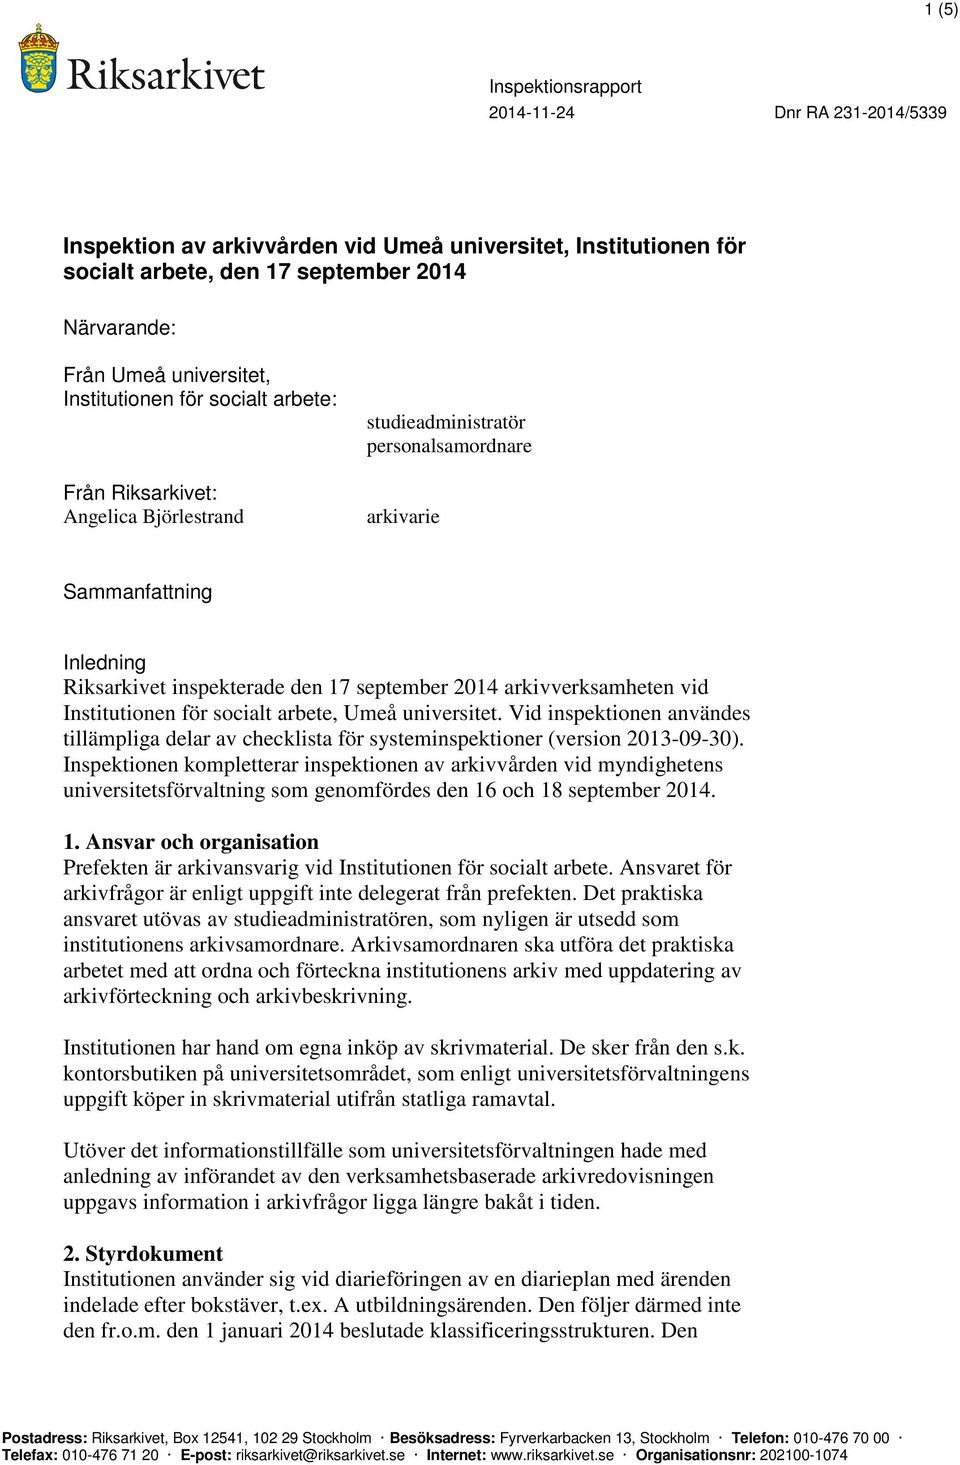 Umeå universitet. Vid inspektionen användes tillämpliga delar av checklista för systeminspektioner (version 2013-09-30).